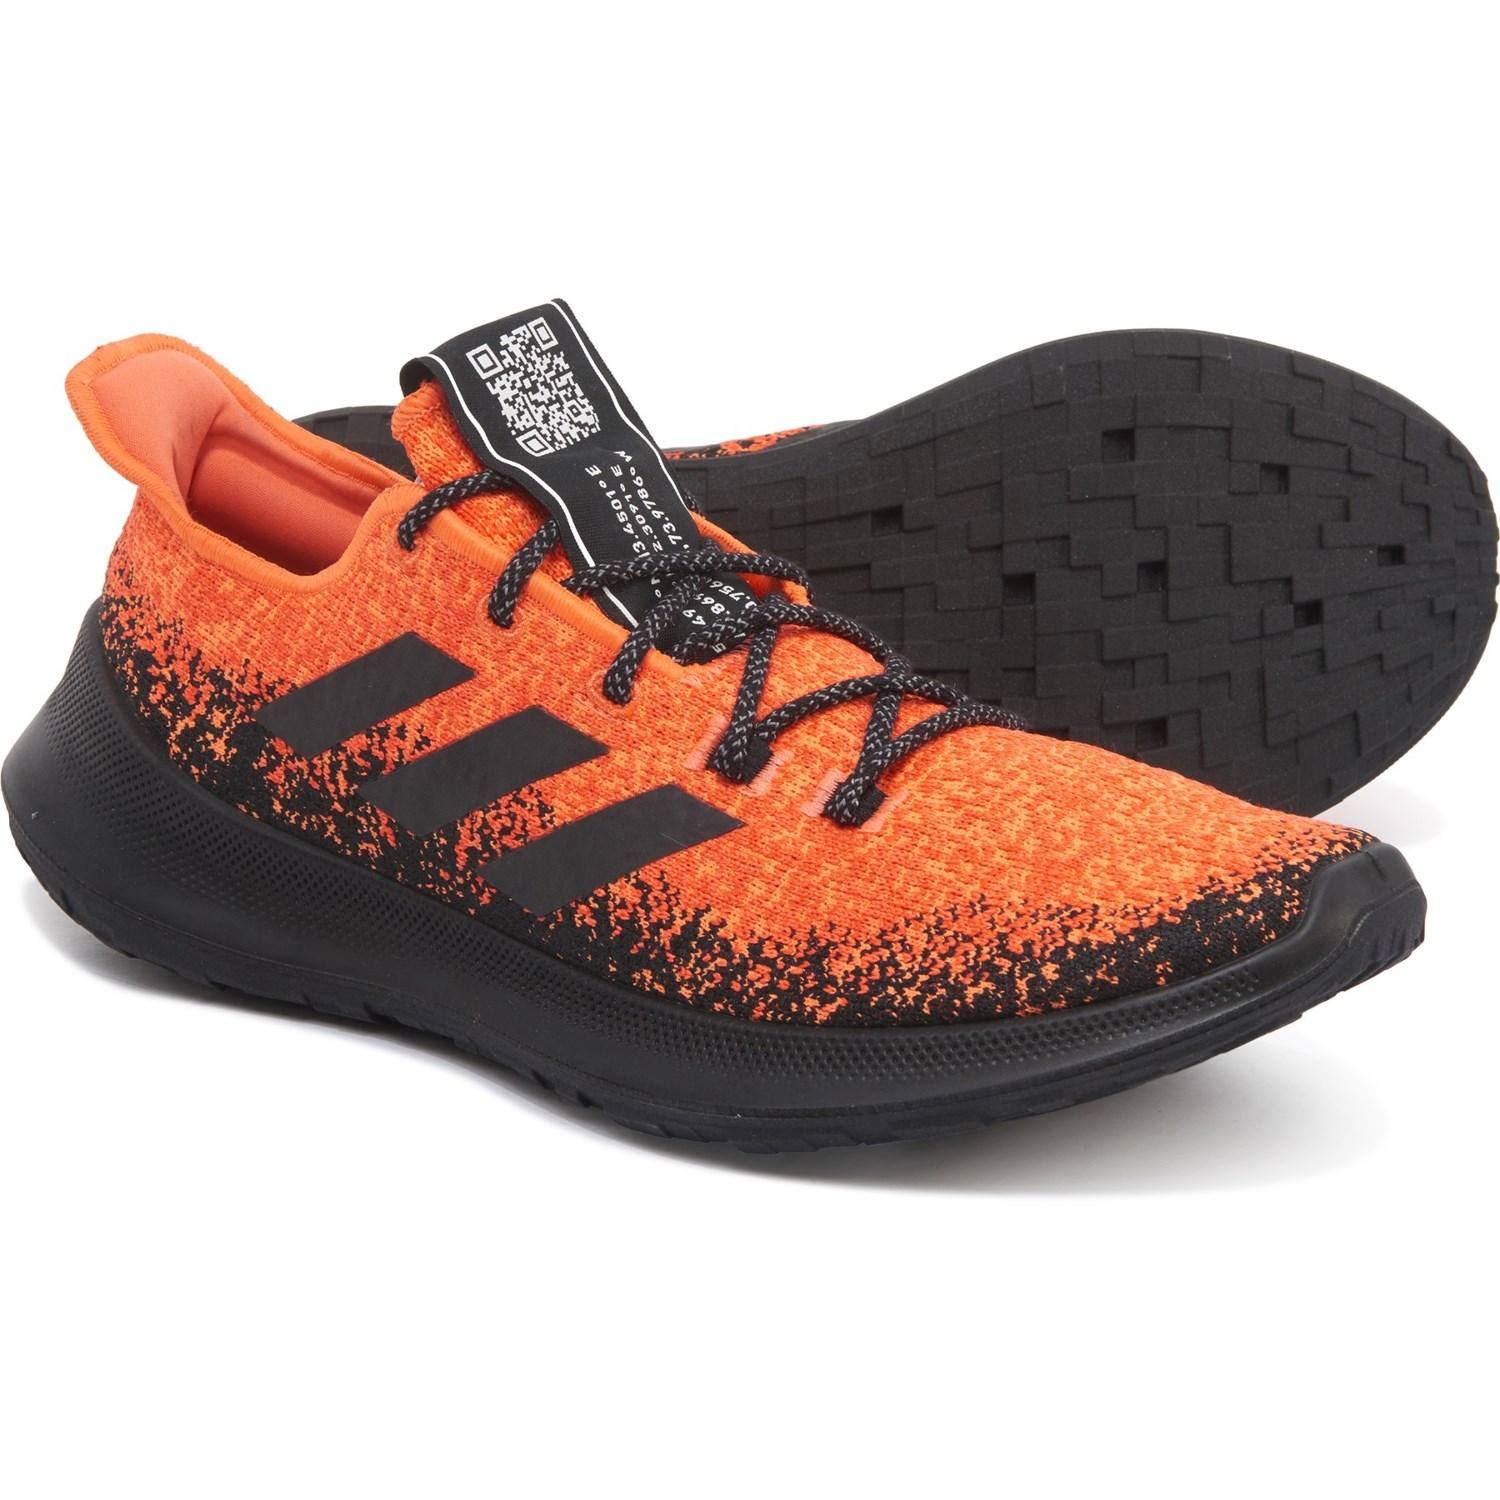 adidas shoes orange and black